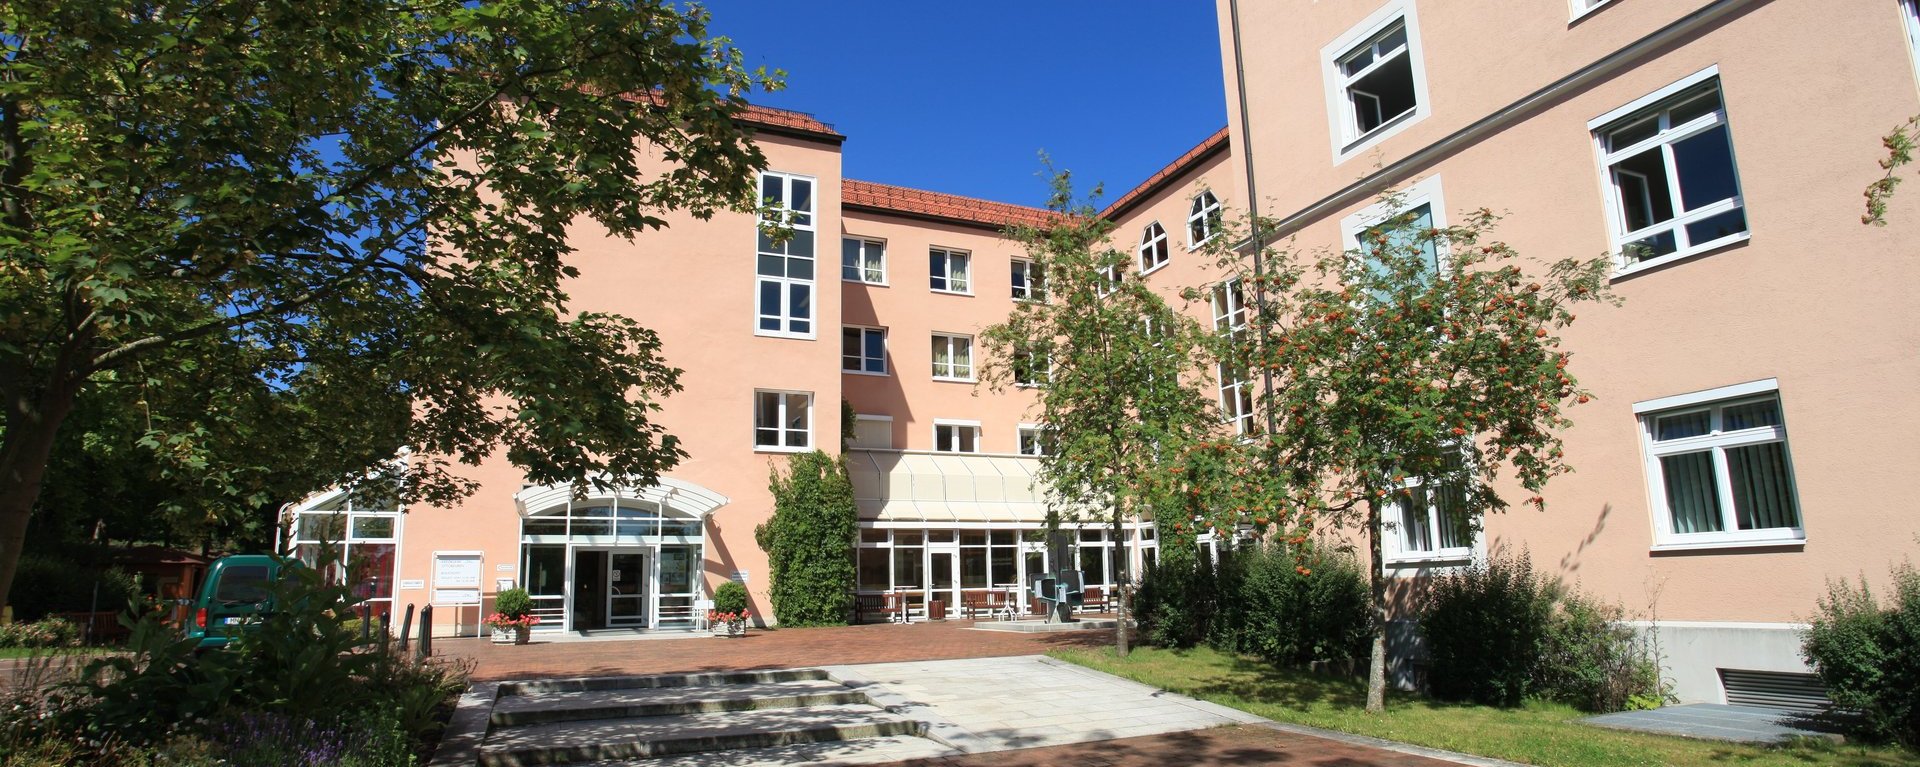 Der Klinikverbund Allgäu mit der Klinik am Standort Ottobeuren im Allgäu